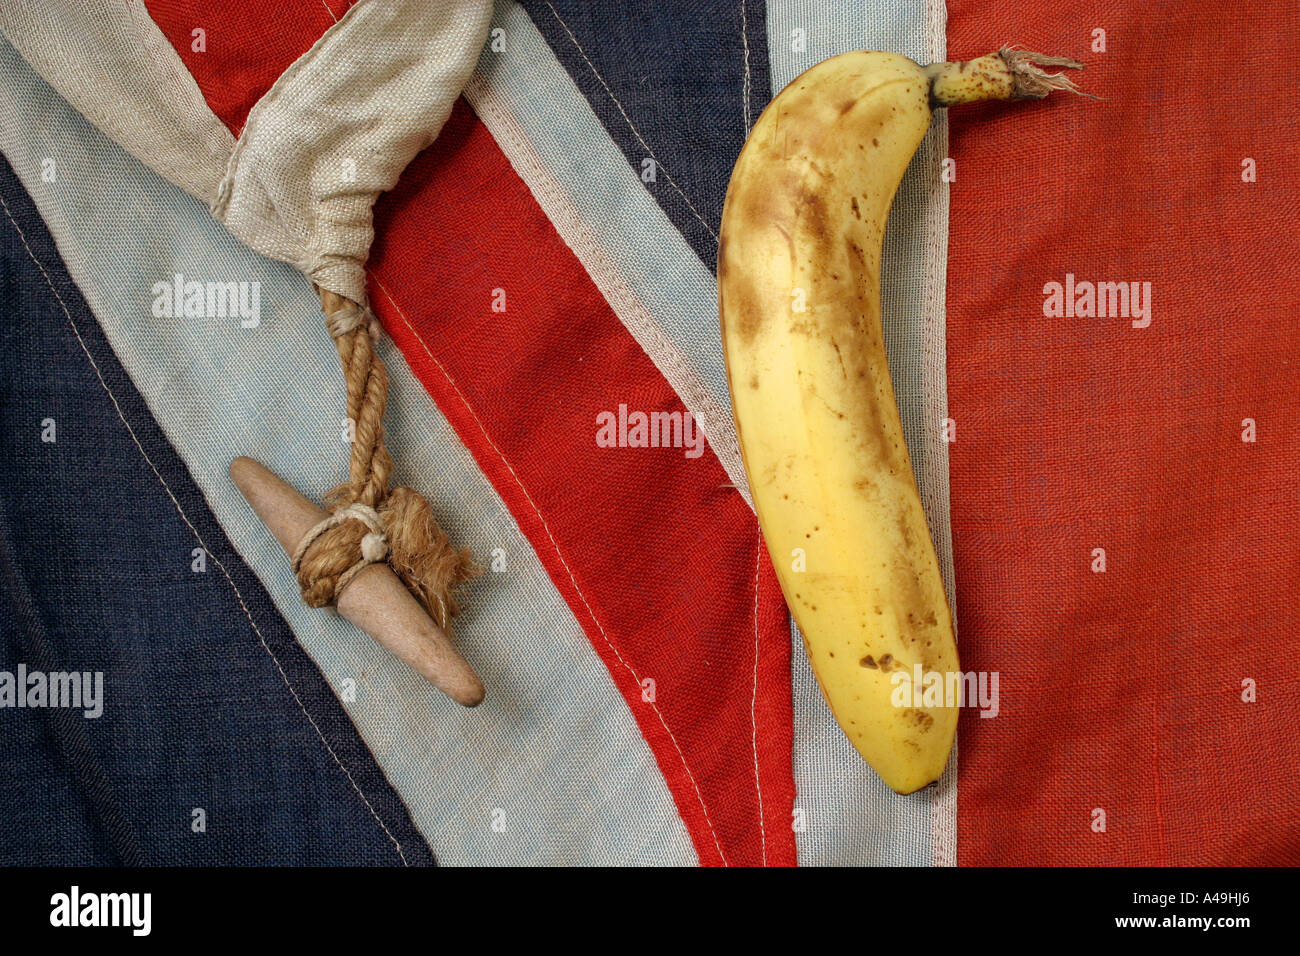 union jack british flag with banana Stock Photo